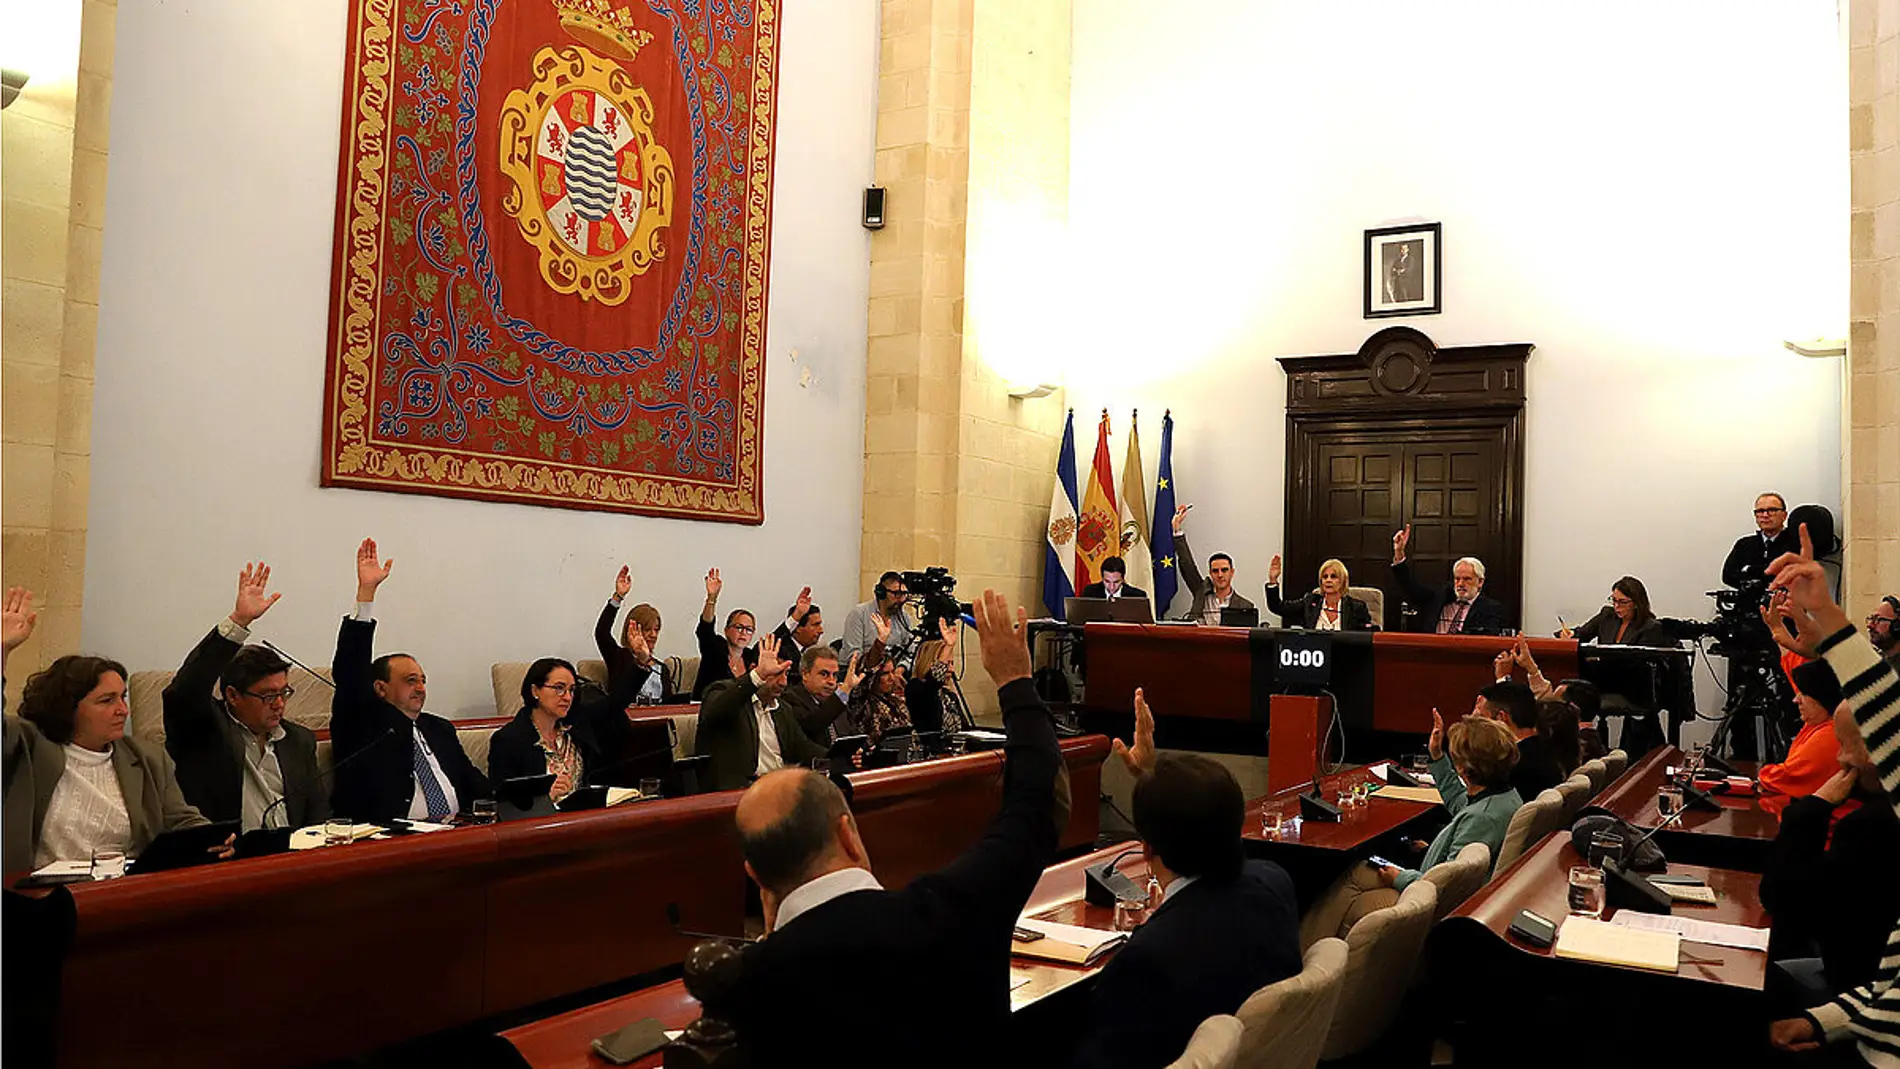 Pleno extraordinario en el Ayuntamiento de Jerez